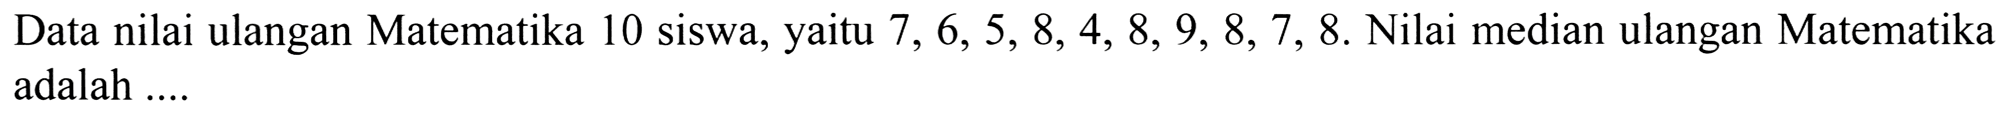 Data nilai ulangan Matematika 10 siswa, yaitu  7,6,5,8,4,8,9,8,7,8 .  Nilai median ulangan Matematika adalah ....